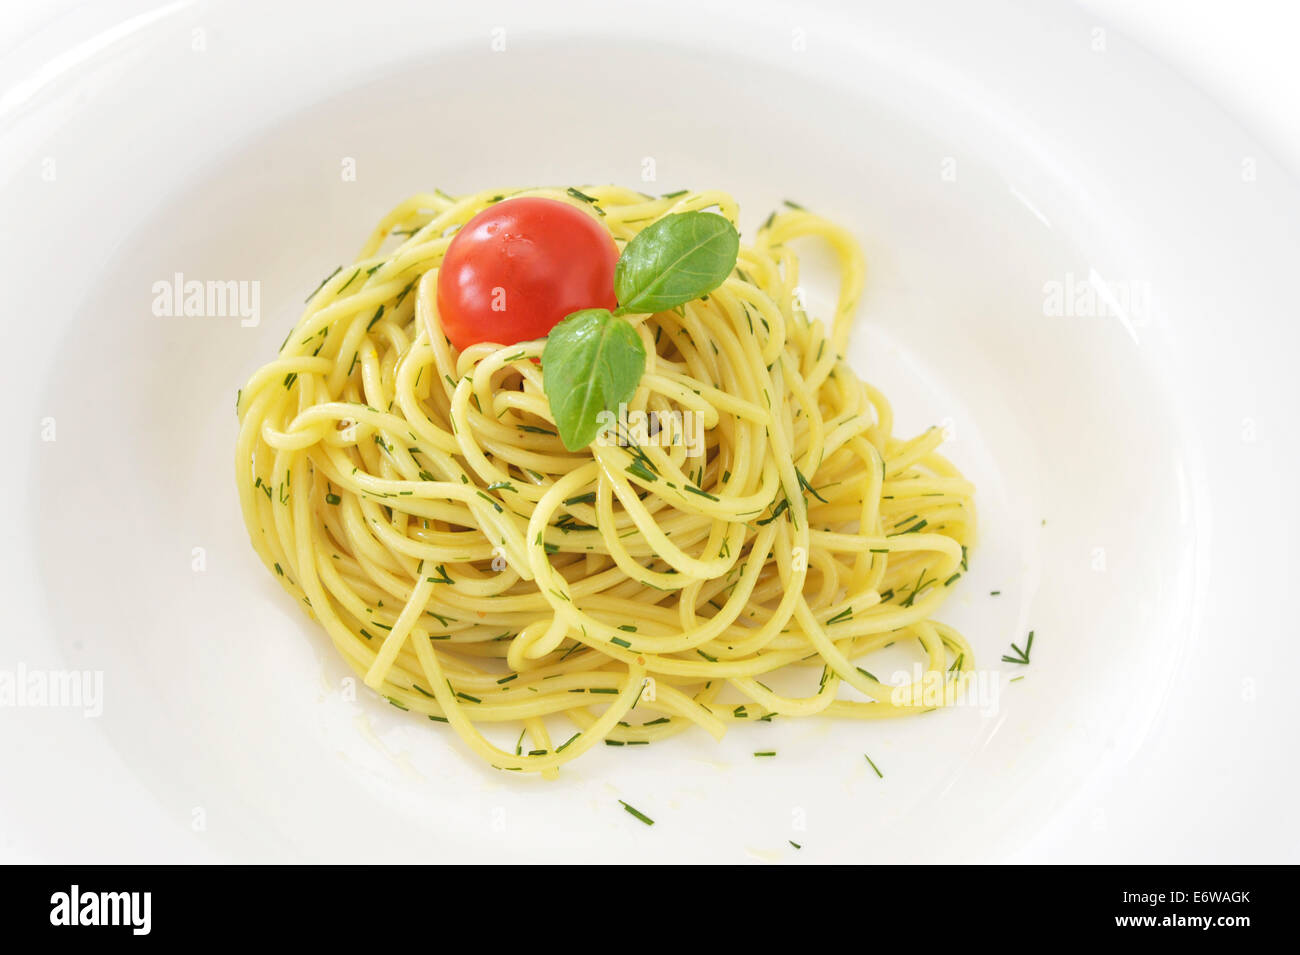 Eine typische italienische Teigwaren Pasta mit Tomaten-Ketchup, Parmesan und Basilikum in weiße Schale. Vegetarisches Essen. Gehobene italienische Küche. Stockfoto